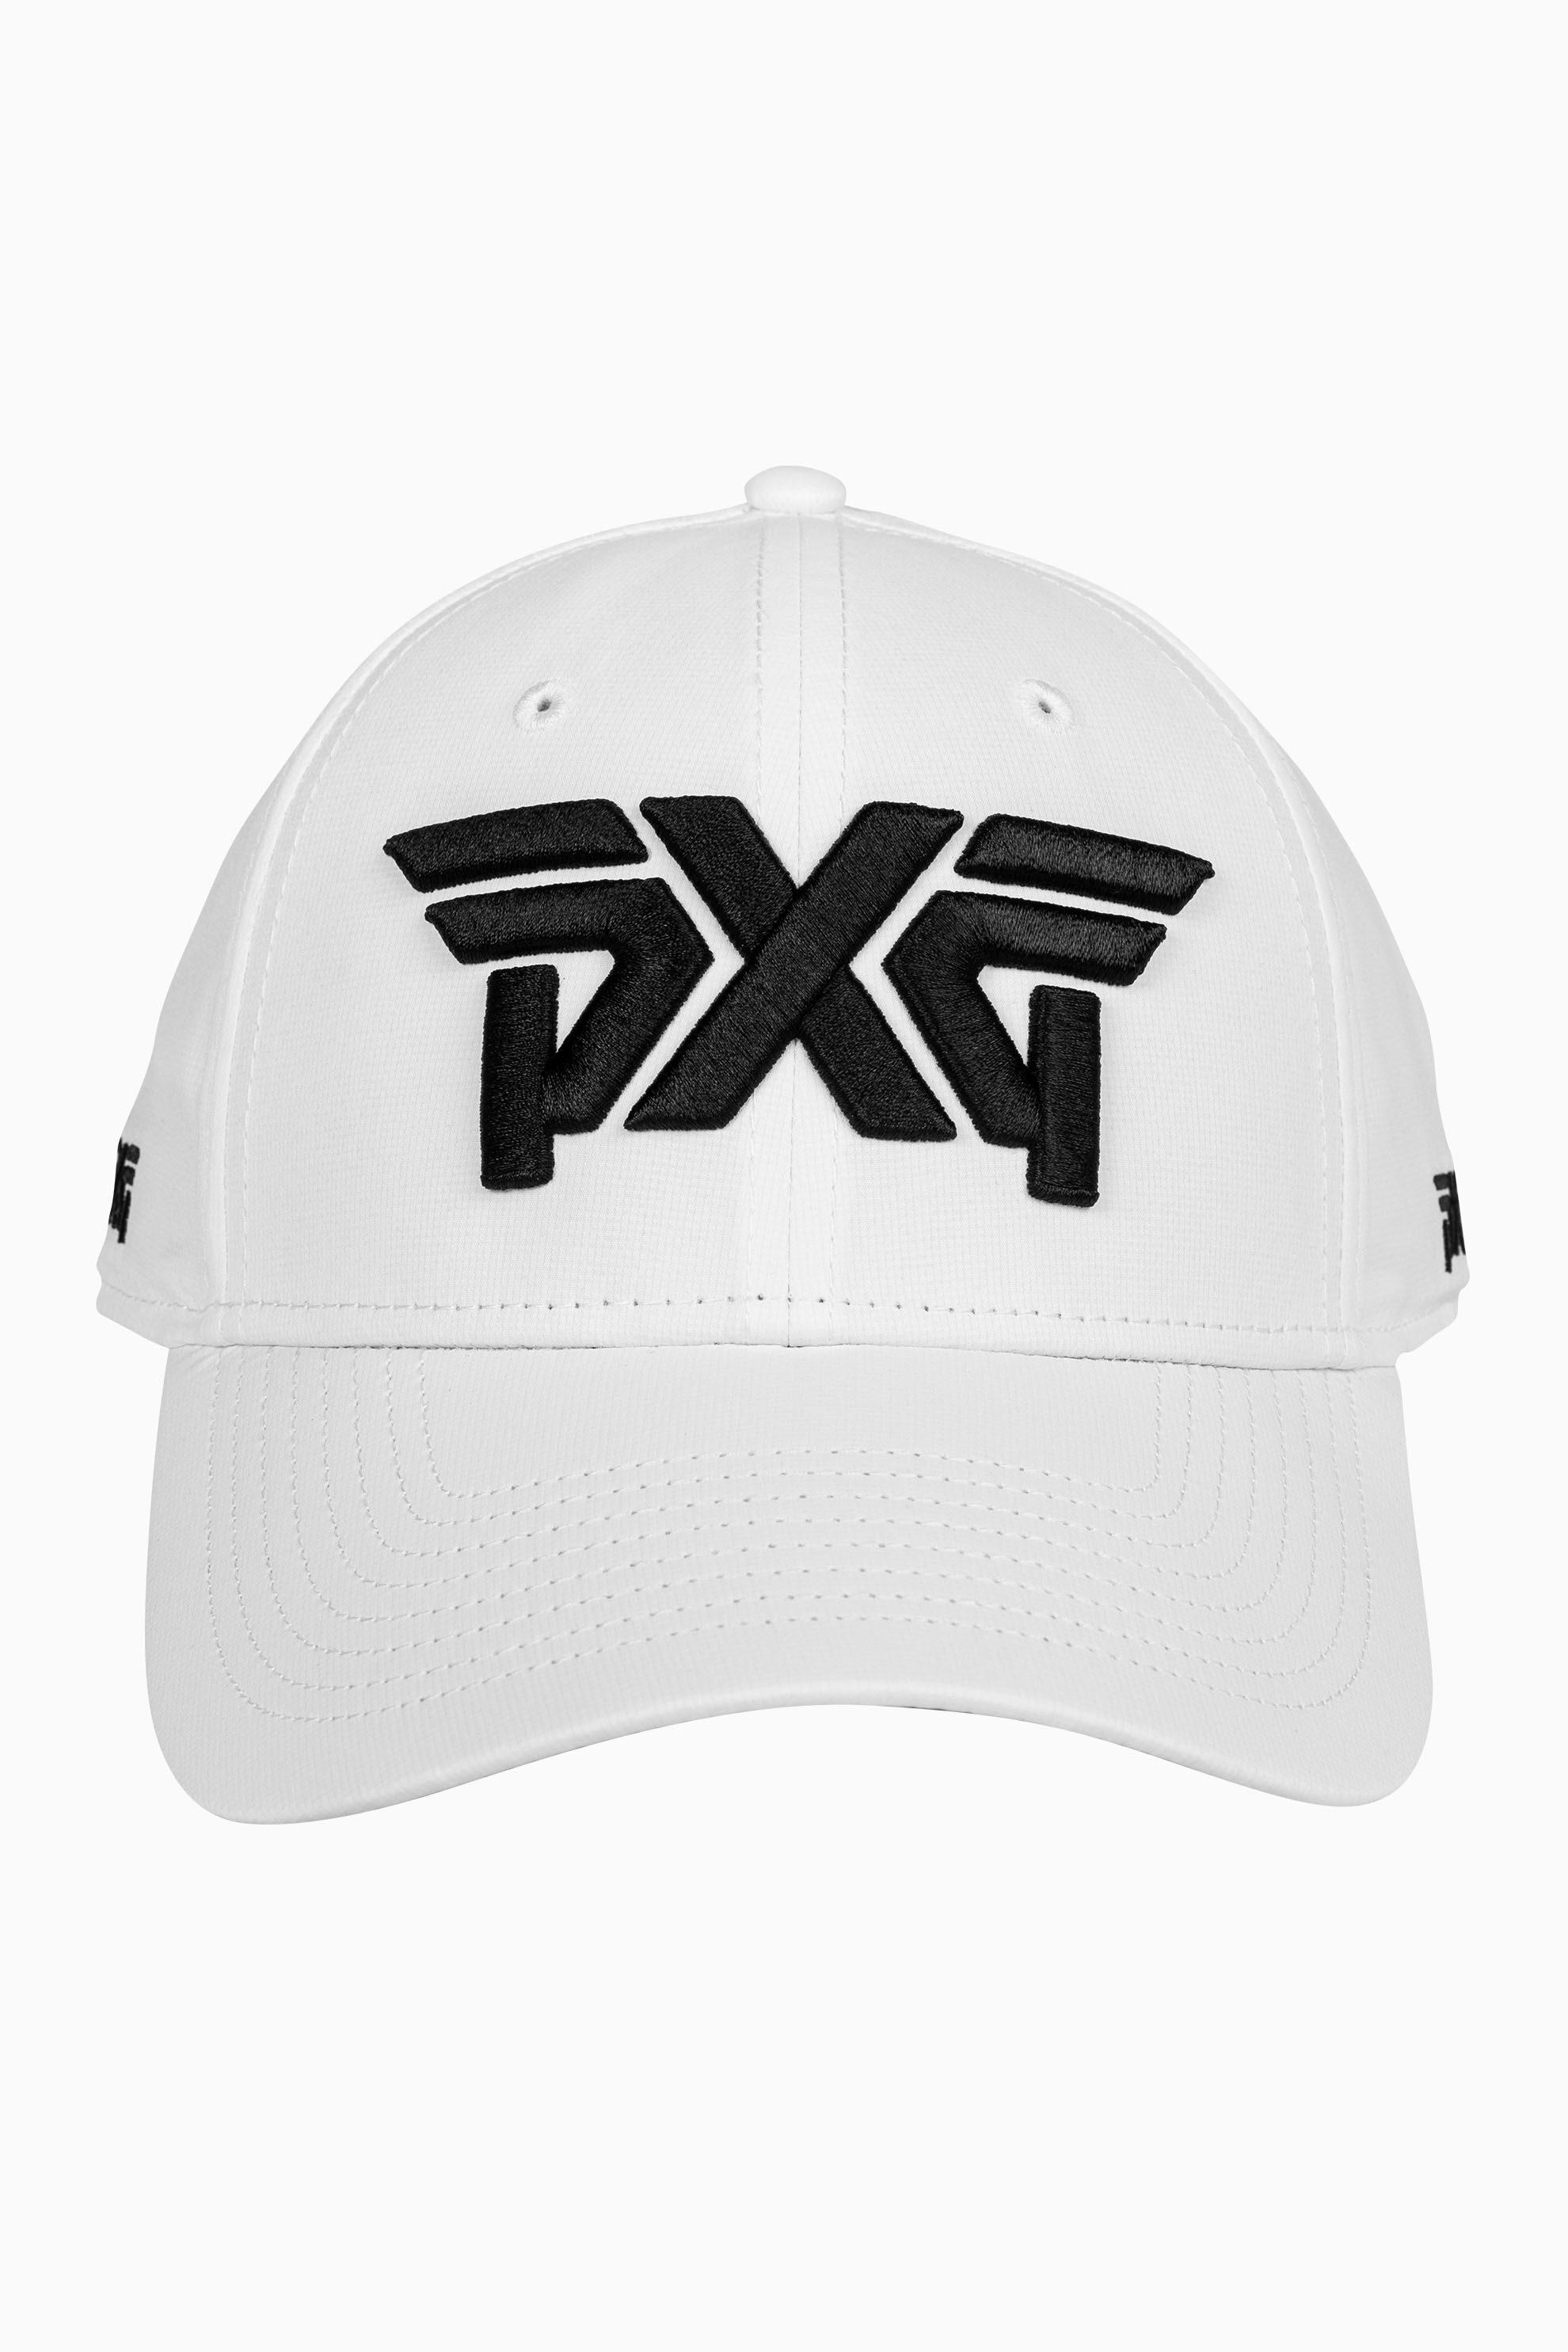 PXG golf ゴルフ 韓国 バケットハット 帽子 - ゴルフ